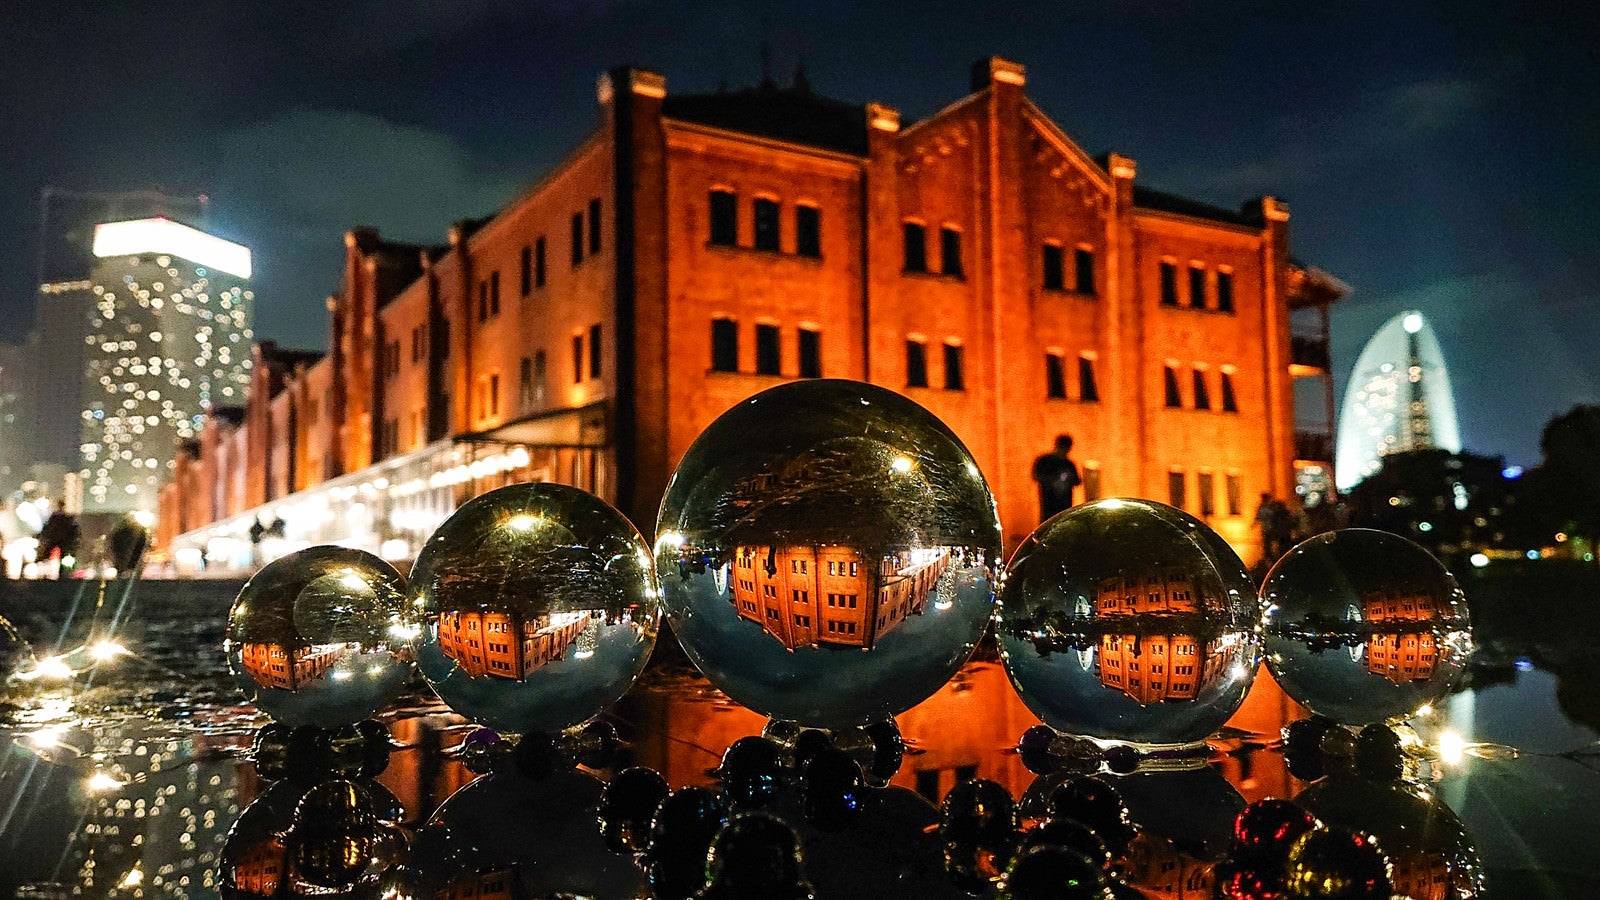 「水晶球から見る横浜赤レンガ倉庫の夜景」の写真